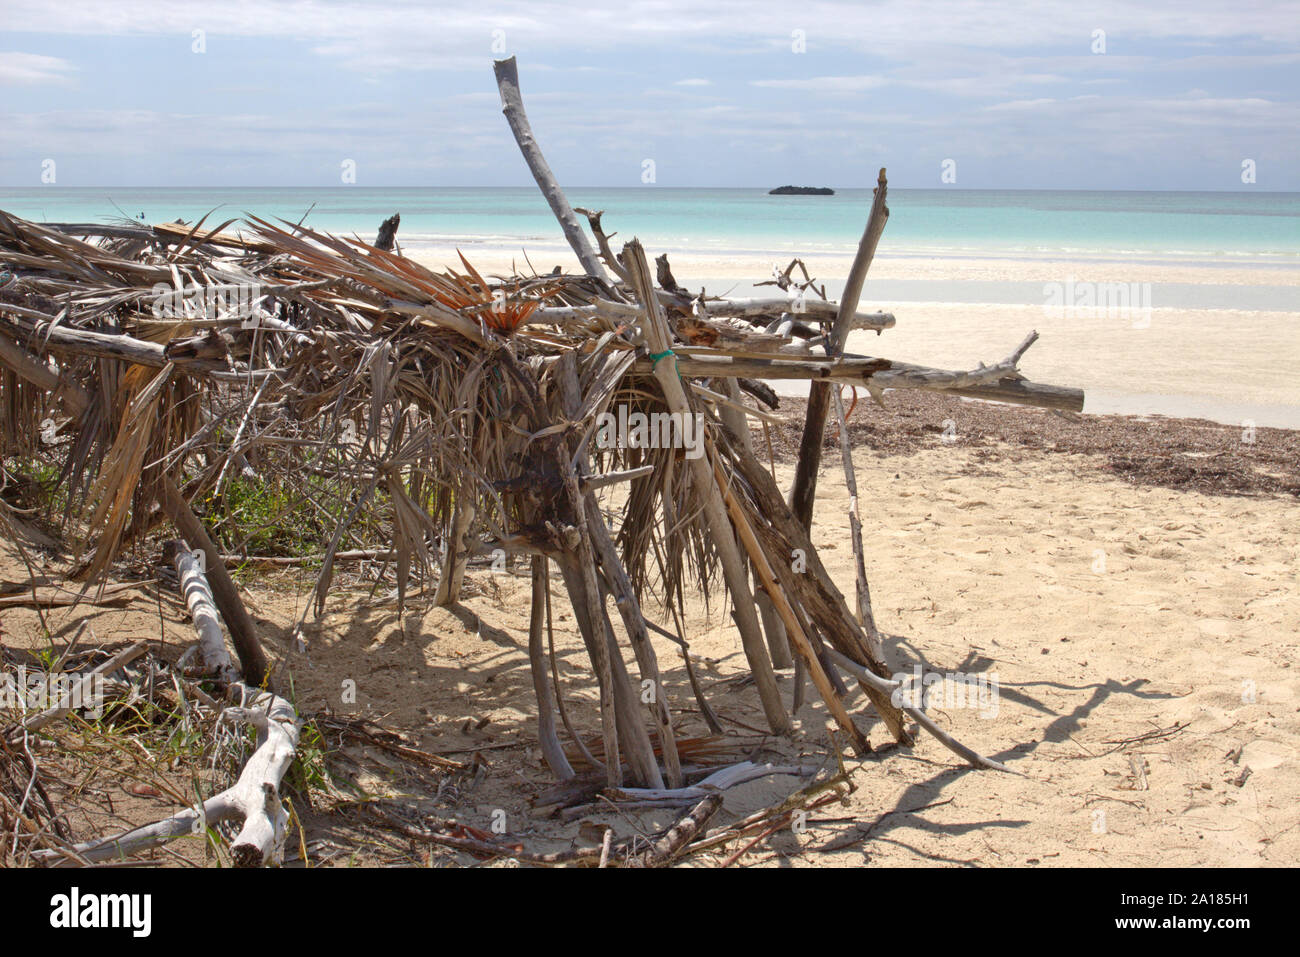 Un ancien abri de branches d'arbres et de palmier construit sur une belle plage de l'île de Grand Bahama. Photo Avril 2018. Peu de chance il est toujours là Banque D'Images